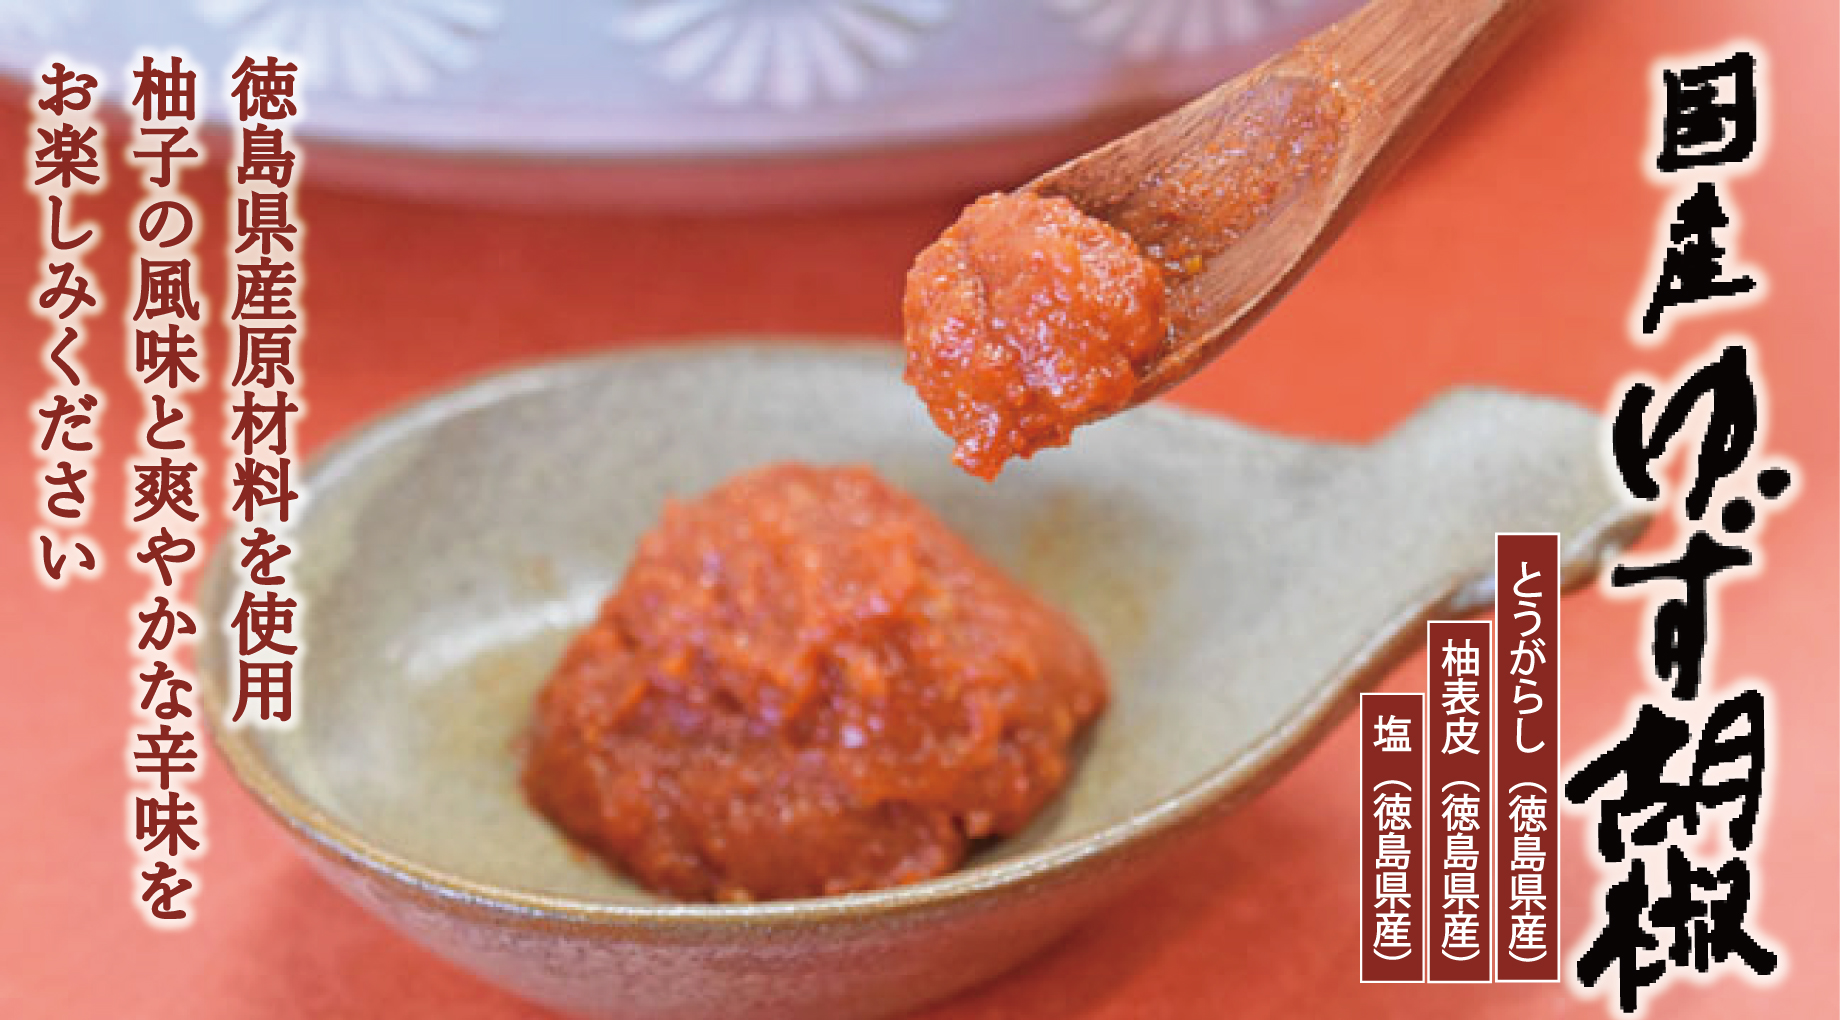 徳島県産の農薬不使用柚を使用した柚胡椒です。徳島県産原材料３品を使用した、柚の風味が薫るさわやかな辛味が特長の逸品です。